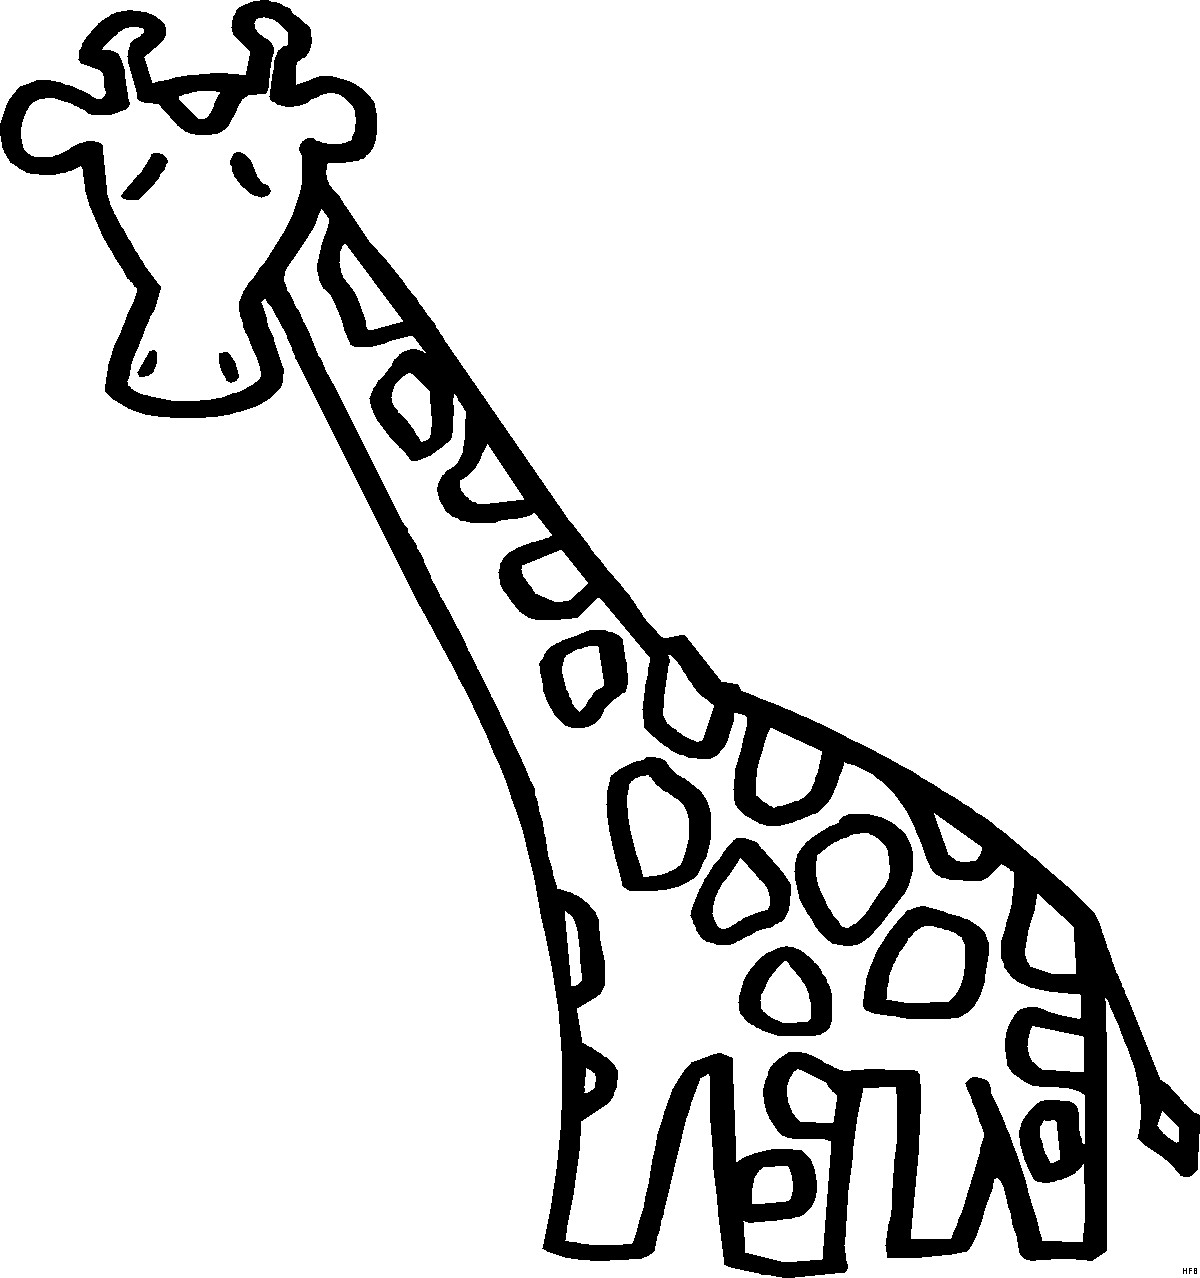 Giraffe Comic Malvorlagen
 Giraffe Mit Langem Hals Ausmalbild & Malvorlage ics